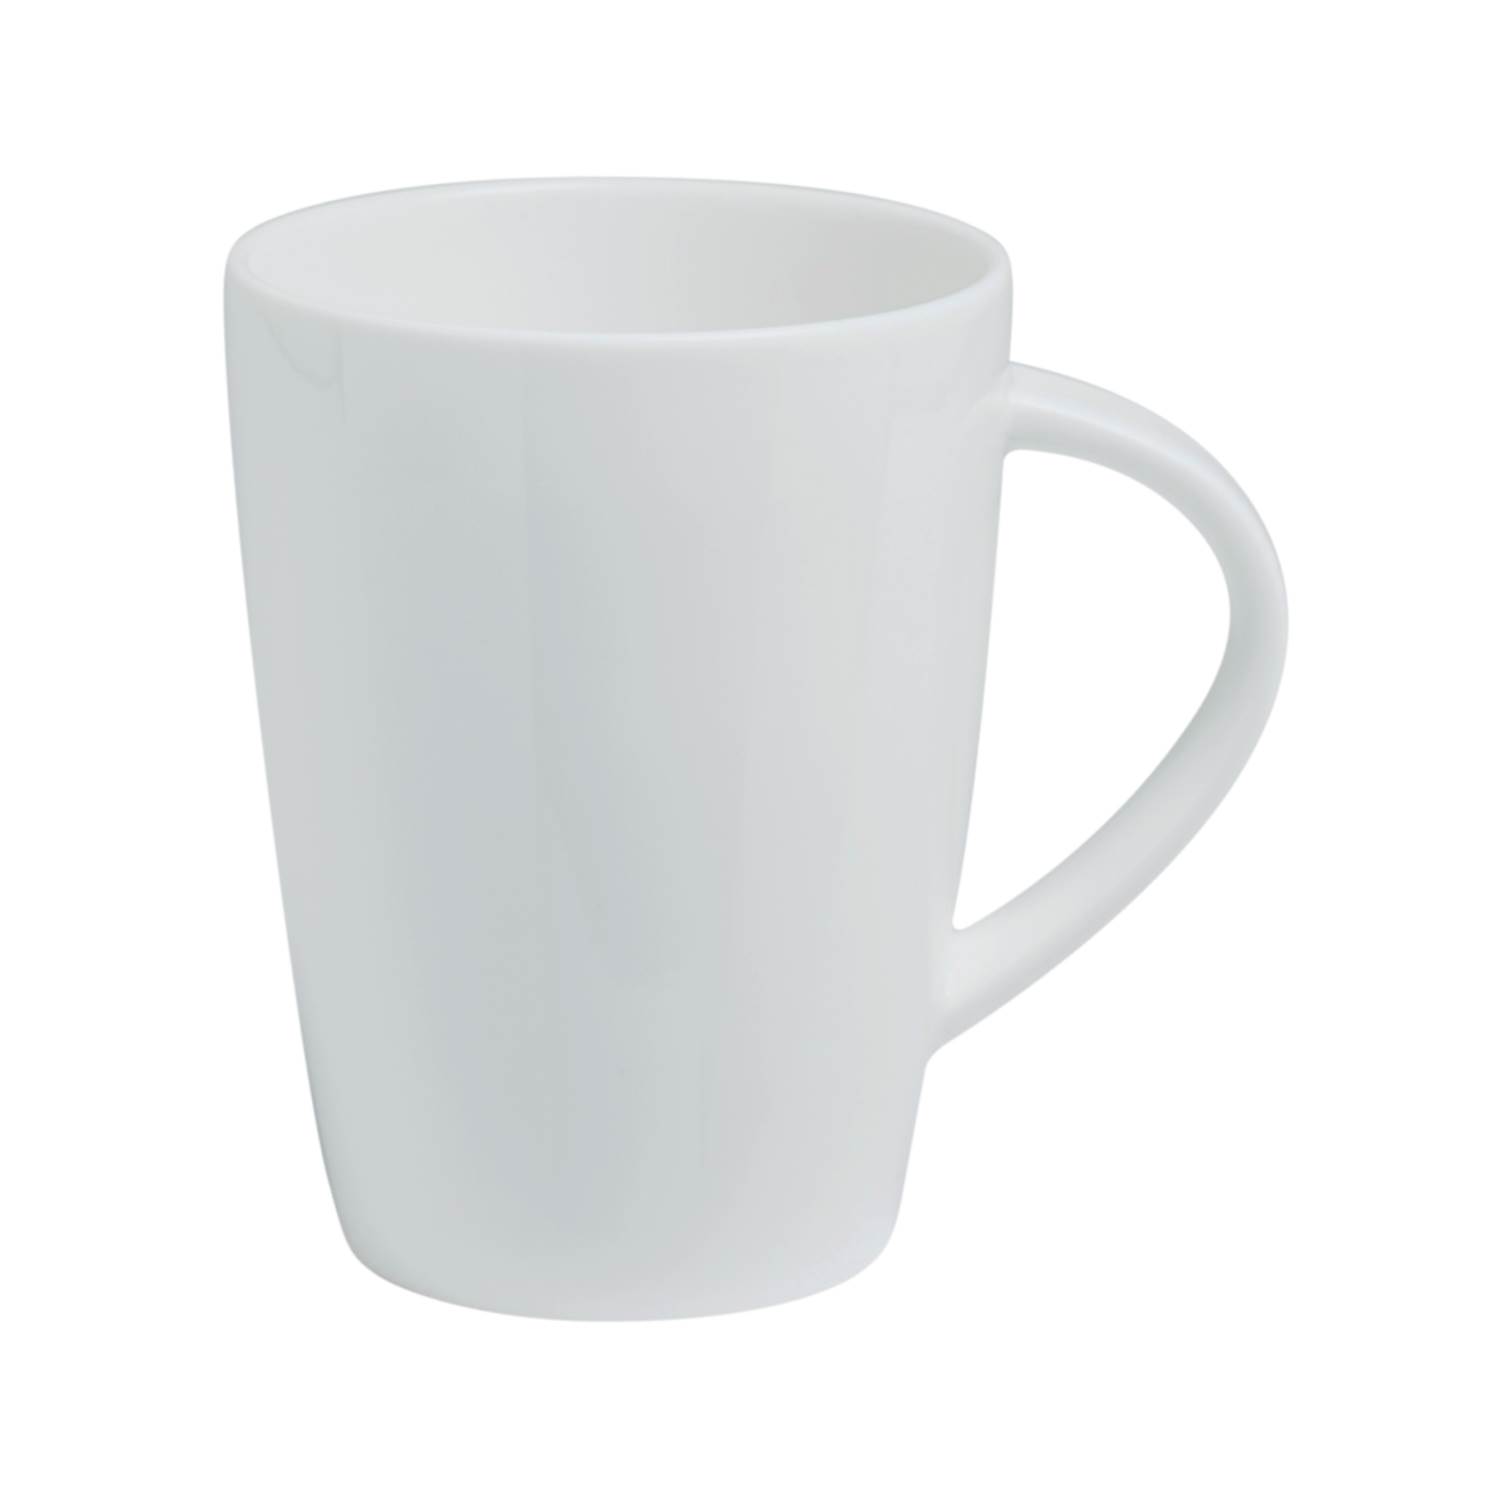 Baralee Simple Plus Mug 300 Cc (10 1/4 Oz)